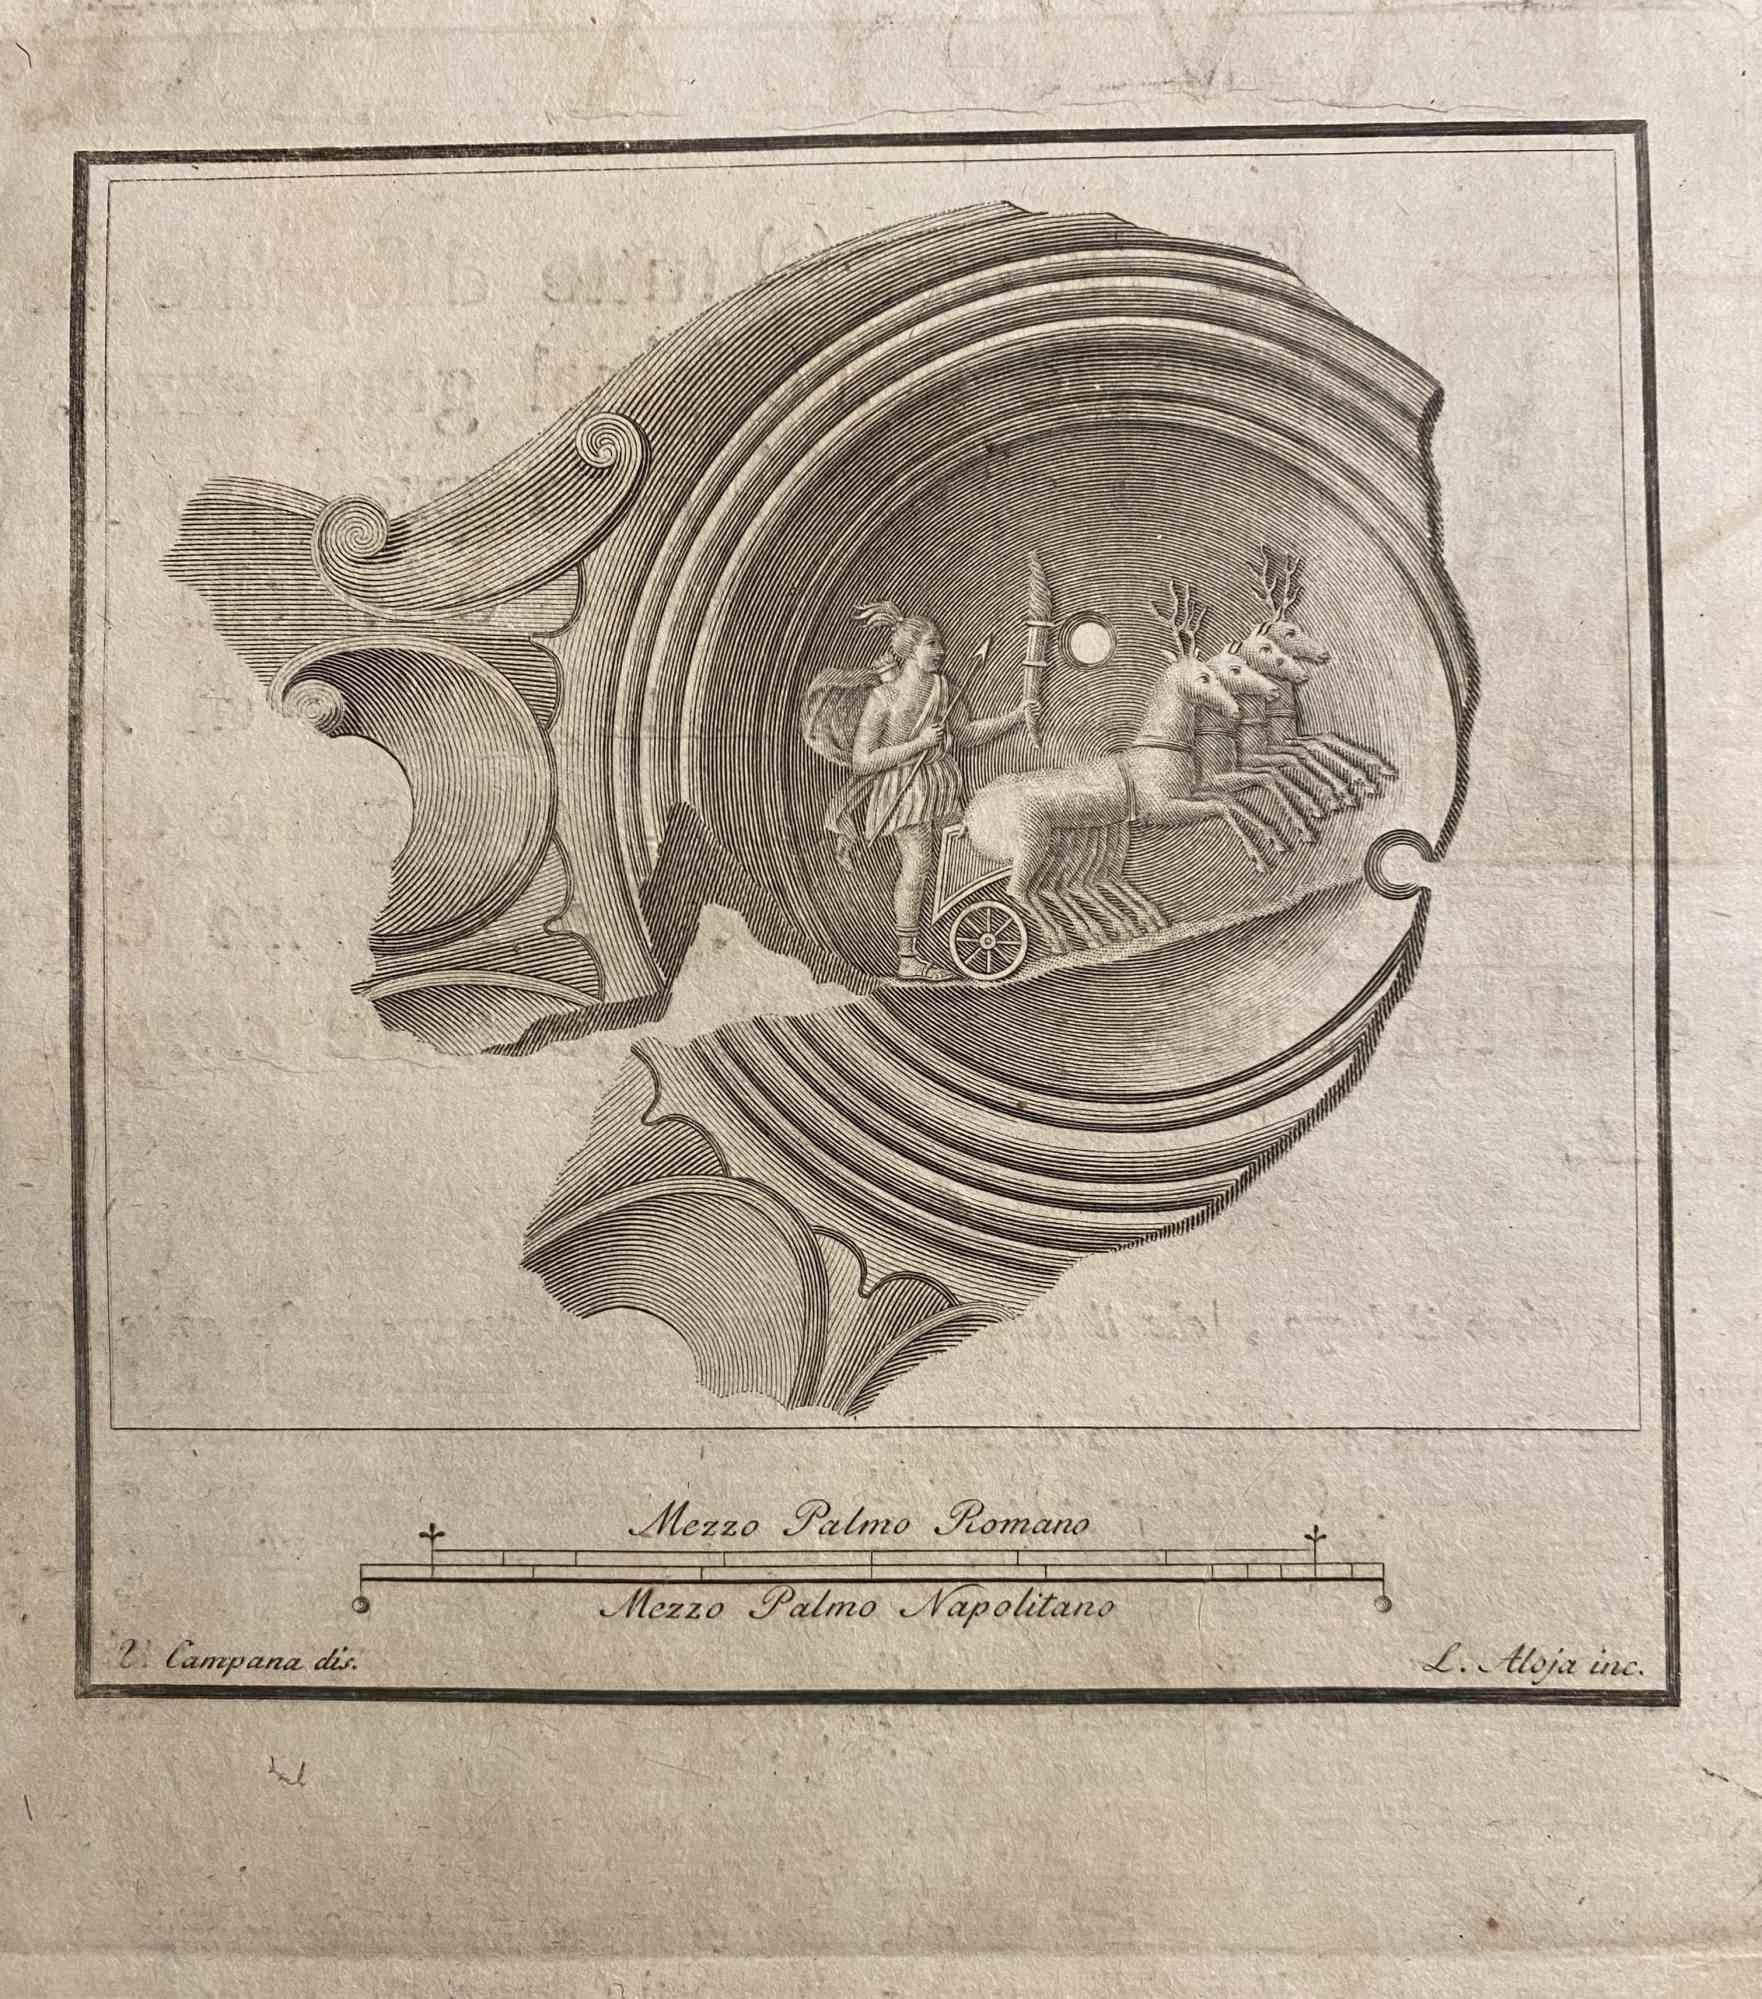 Mars dans son char des "Antiquités d'Herculanum" est une gravure sur papier réalisée par Luigi Aloja au 18e siècle.

Signé sur la plaque.

Bon état avec quelques pliages et des rousseurs.

La gravure appartient à la suite d'estampes "Antiquités